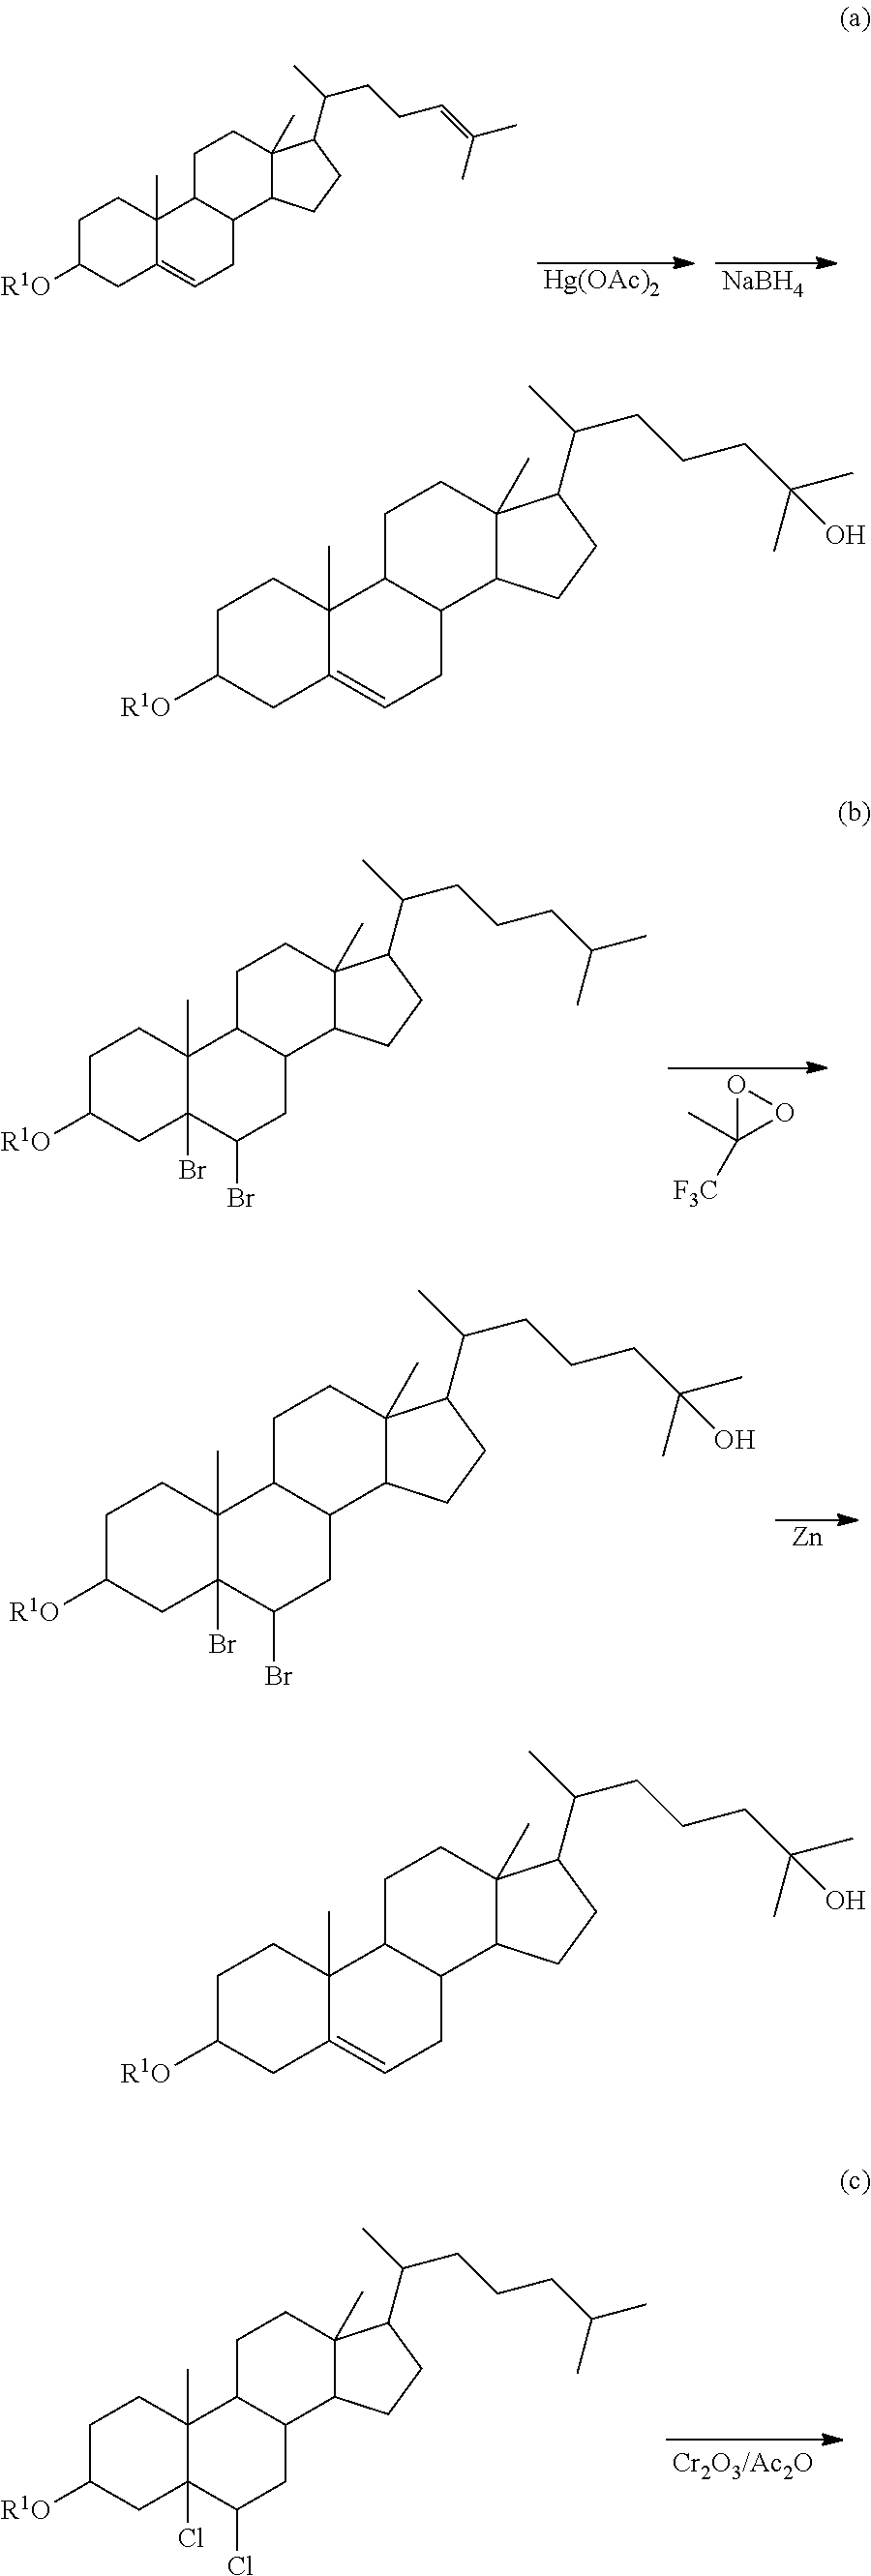 Method of synthesizing 25-hydroxy cholesterol